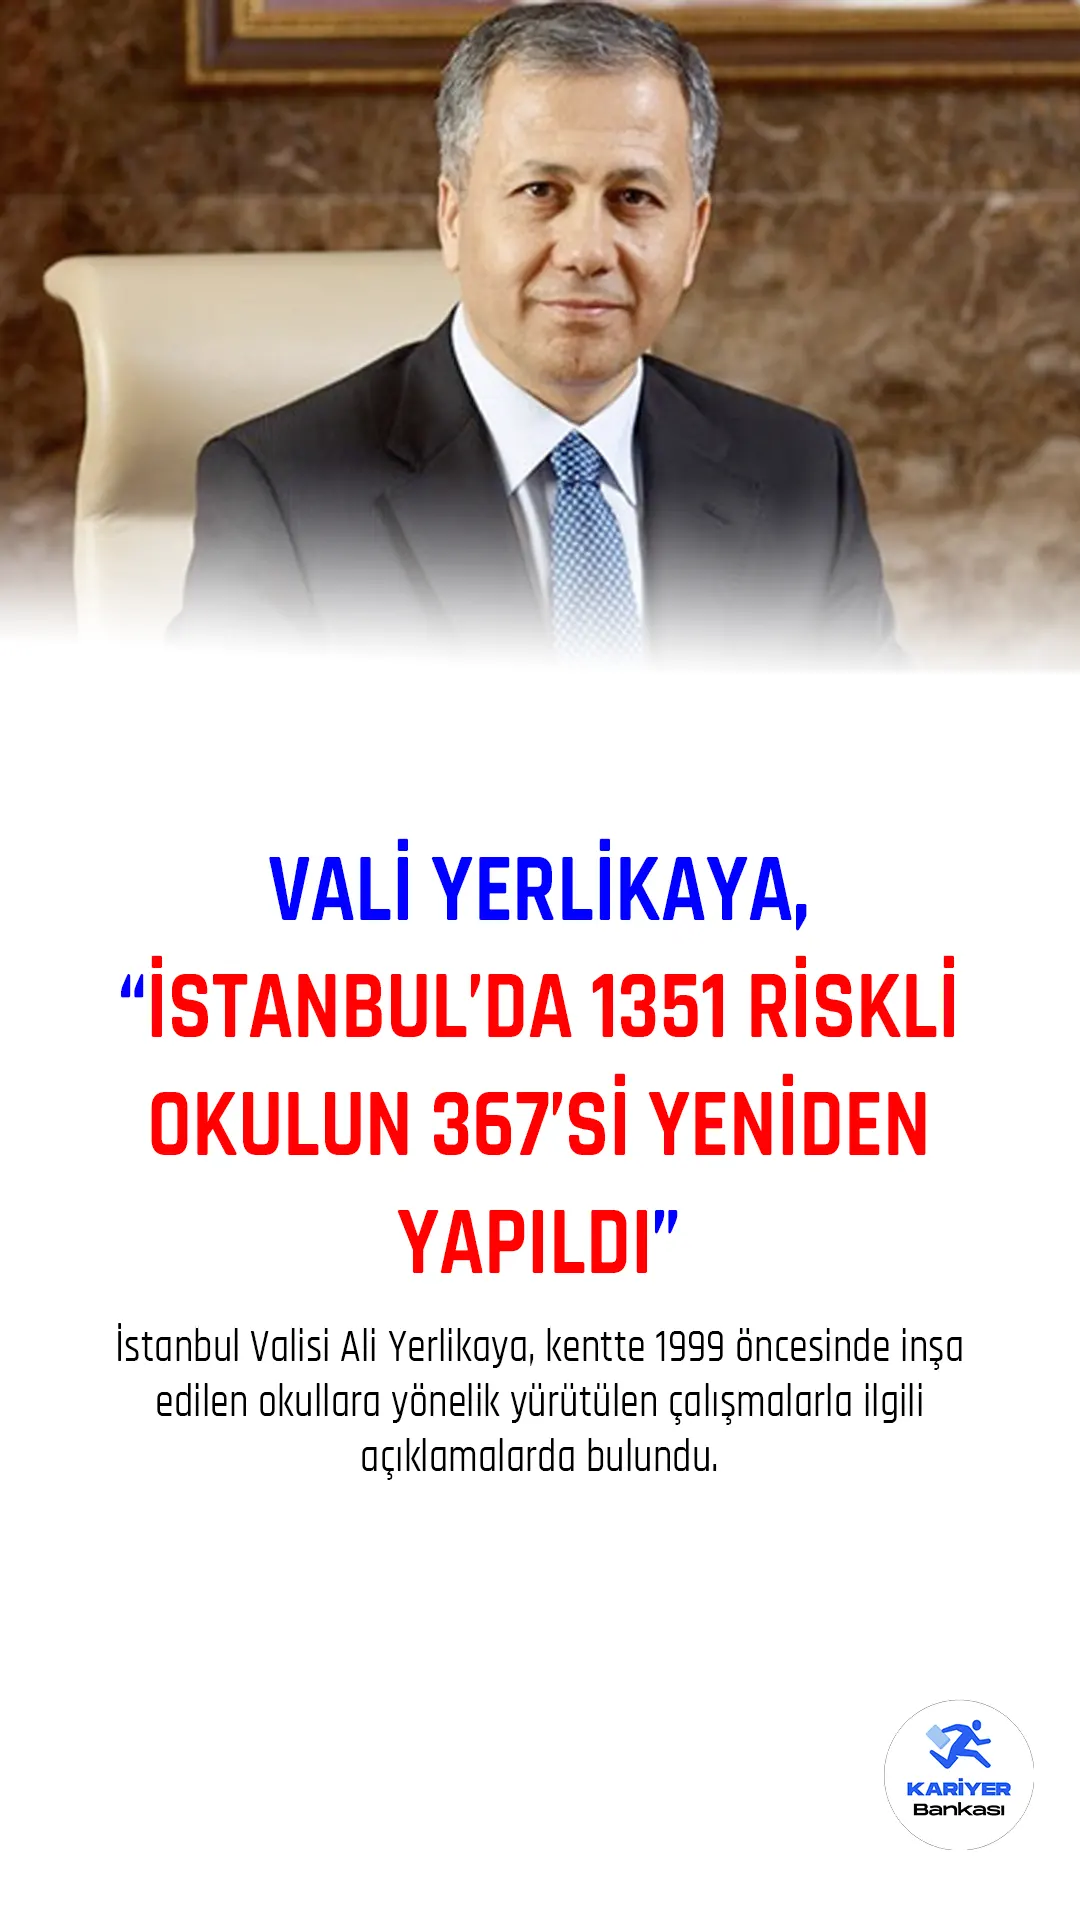 İstanbul Valisi Ali Yerlikaya, kentte 1999 öncesinde inşa edilen okullara yönelik yürütülen çalışmalarla ilgili açıklamalarda bulundu.